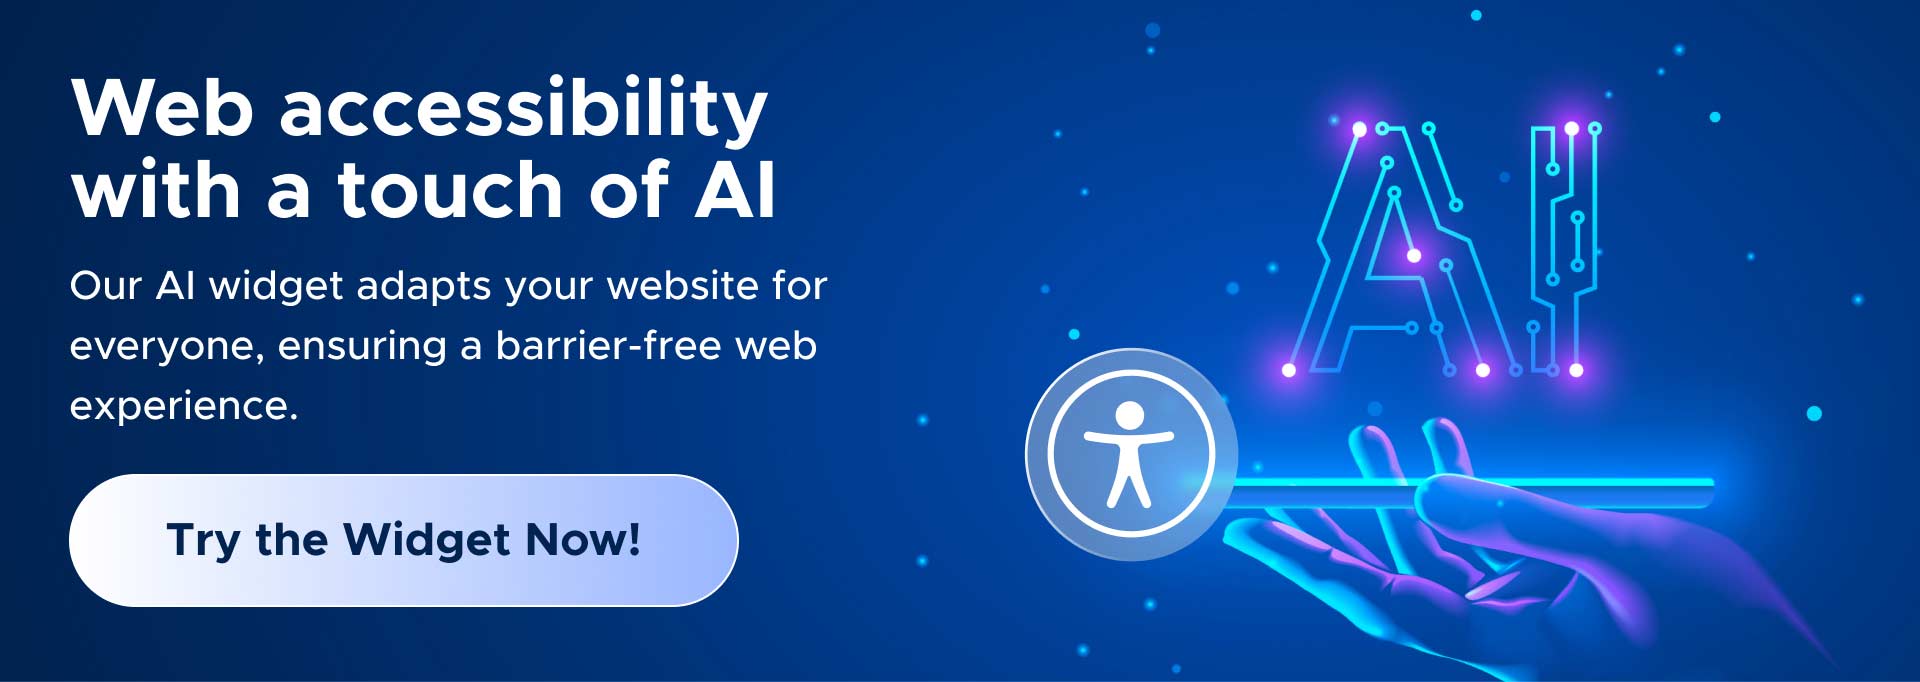 Banner: AI for web access, neon AI & hand symbols, CTA button